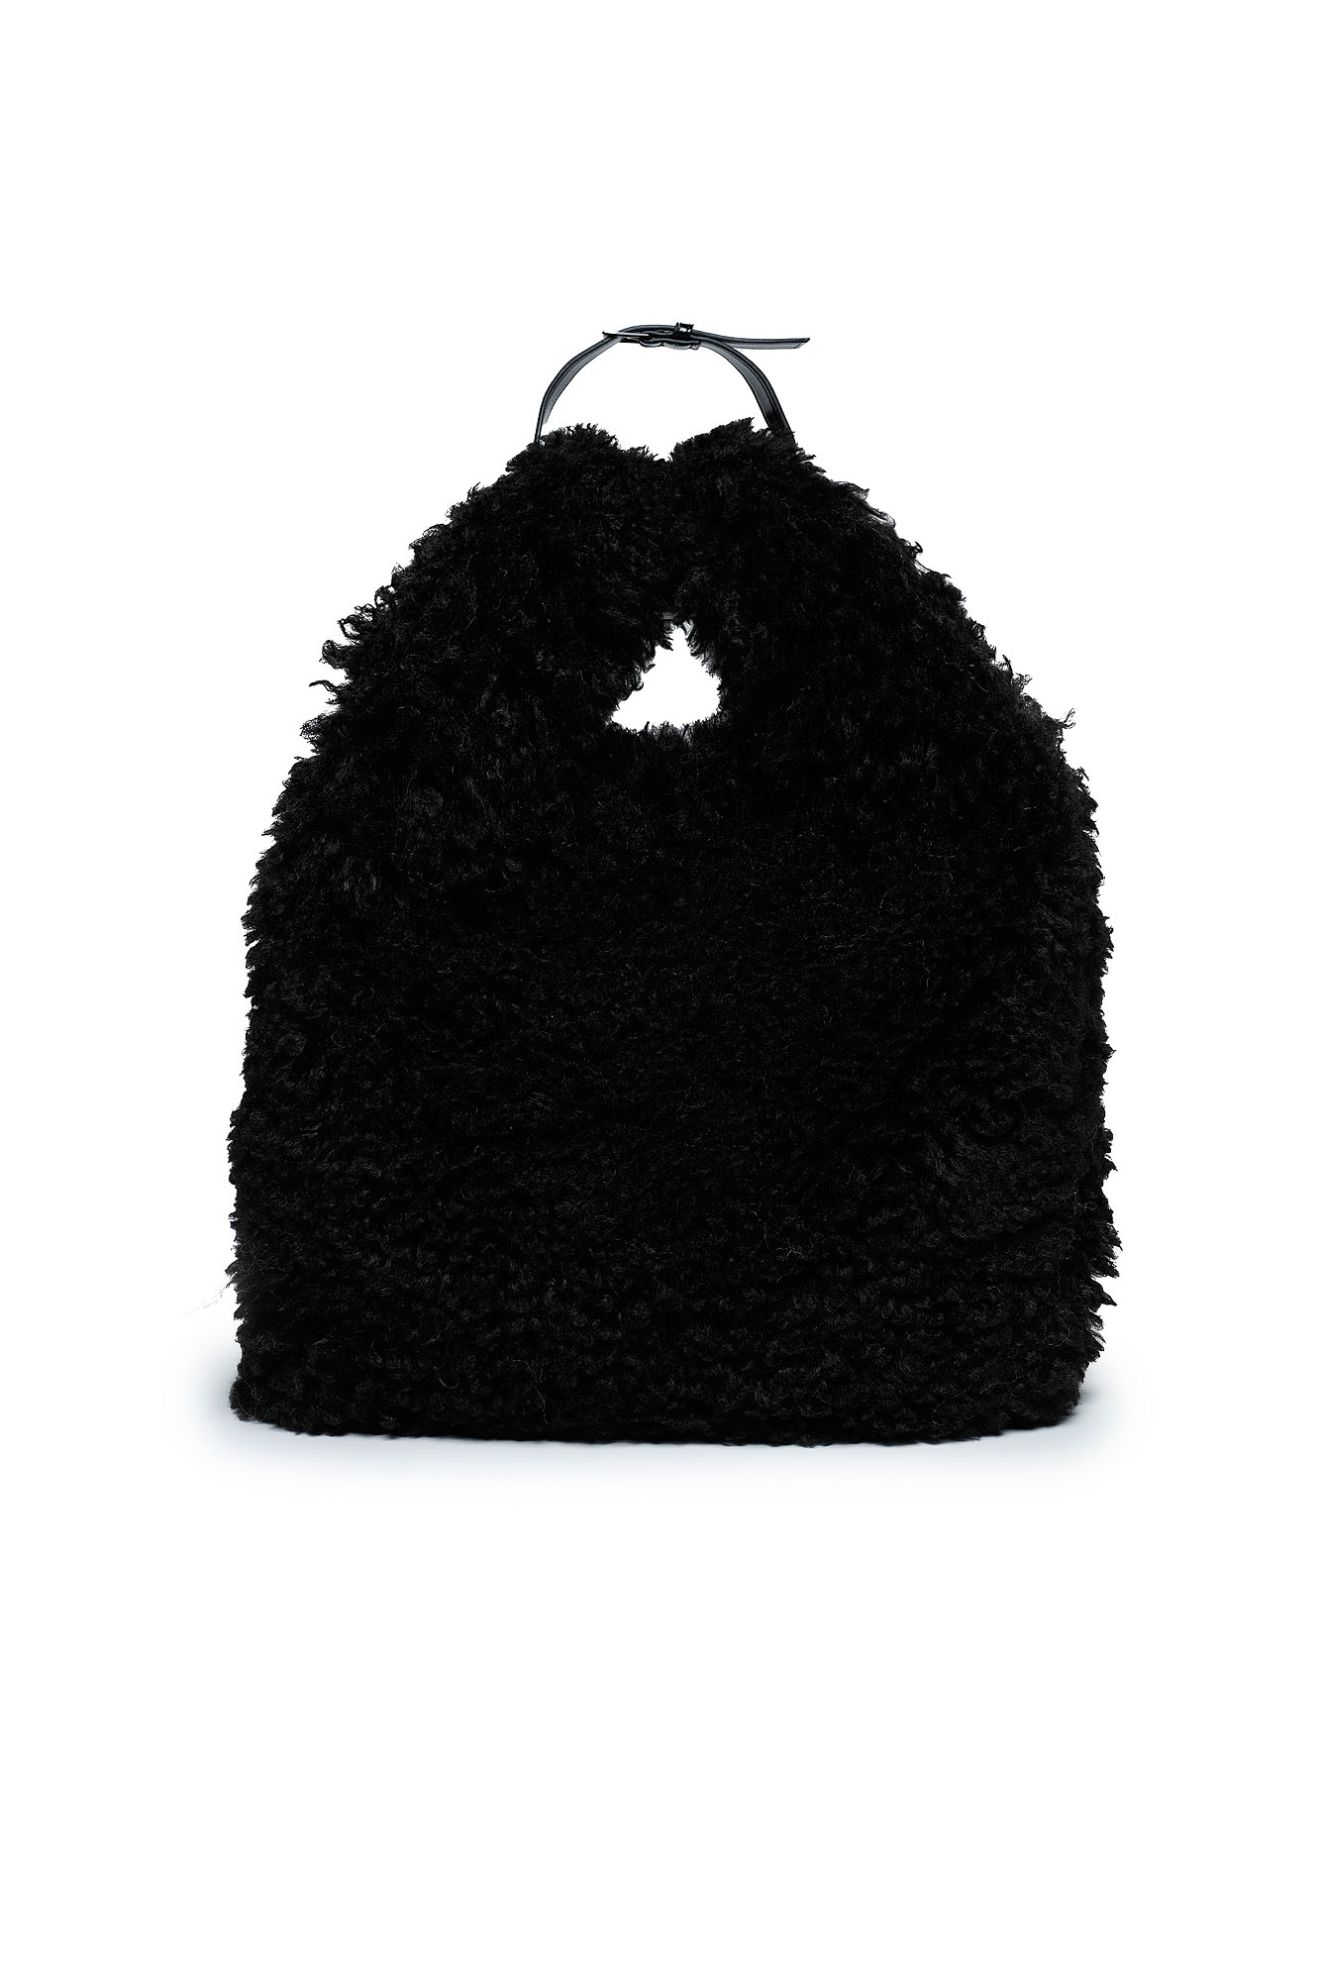 Fleece Tote Bag in black | N°21 | Official Online Store